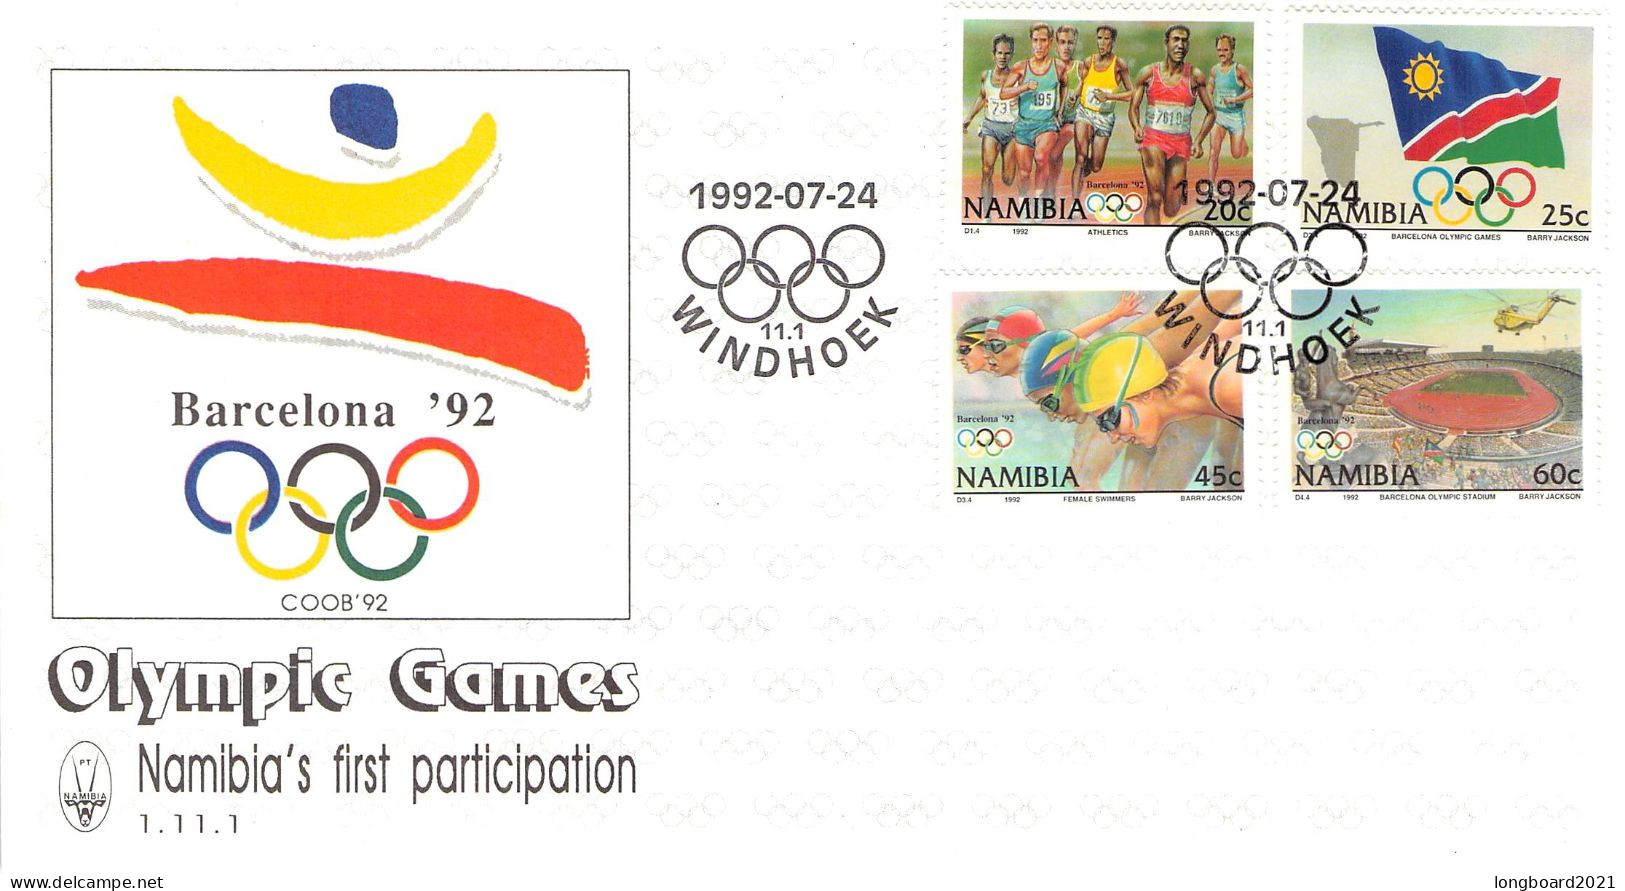 NAMIBIA - FDC 1992 OLYMPICS BARCELONA / 4308 - Namibia (1990- ...)